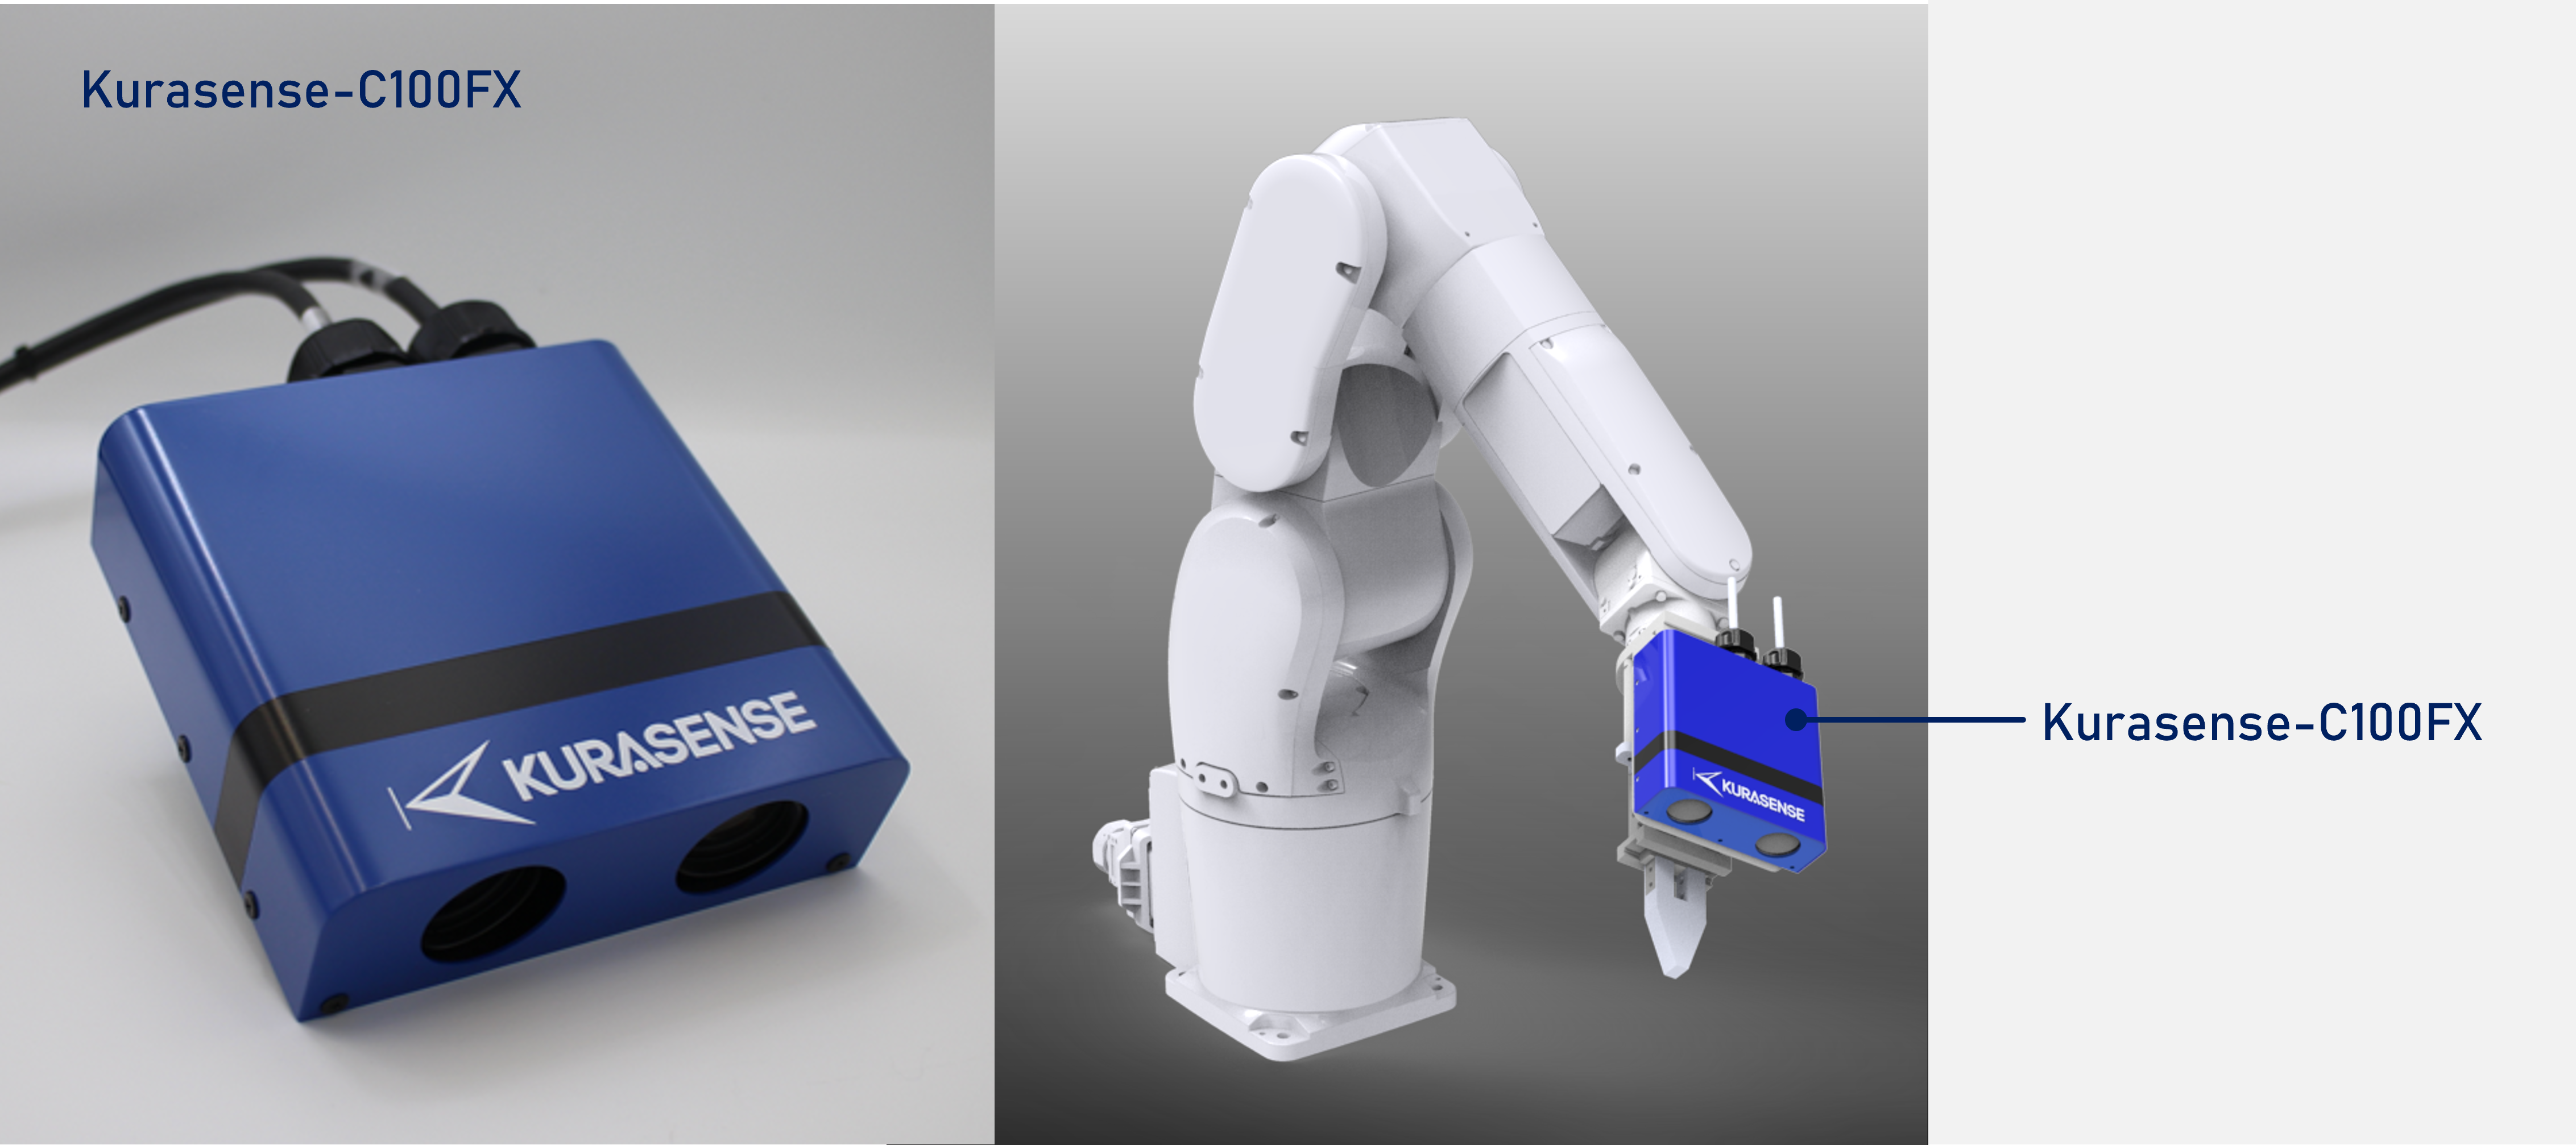 クラボウ、高速3Dビジョンセンサ「KURASENSE」にセンサーヘッド分離型の新機種発売